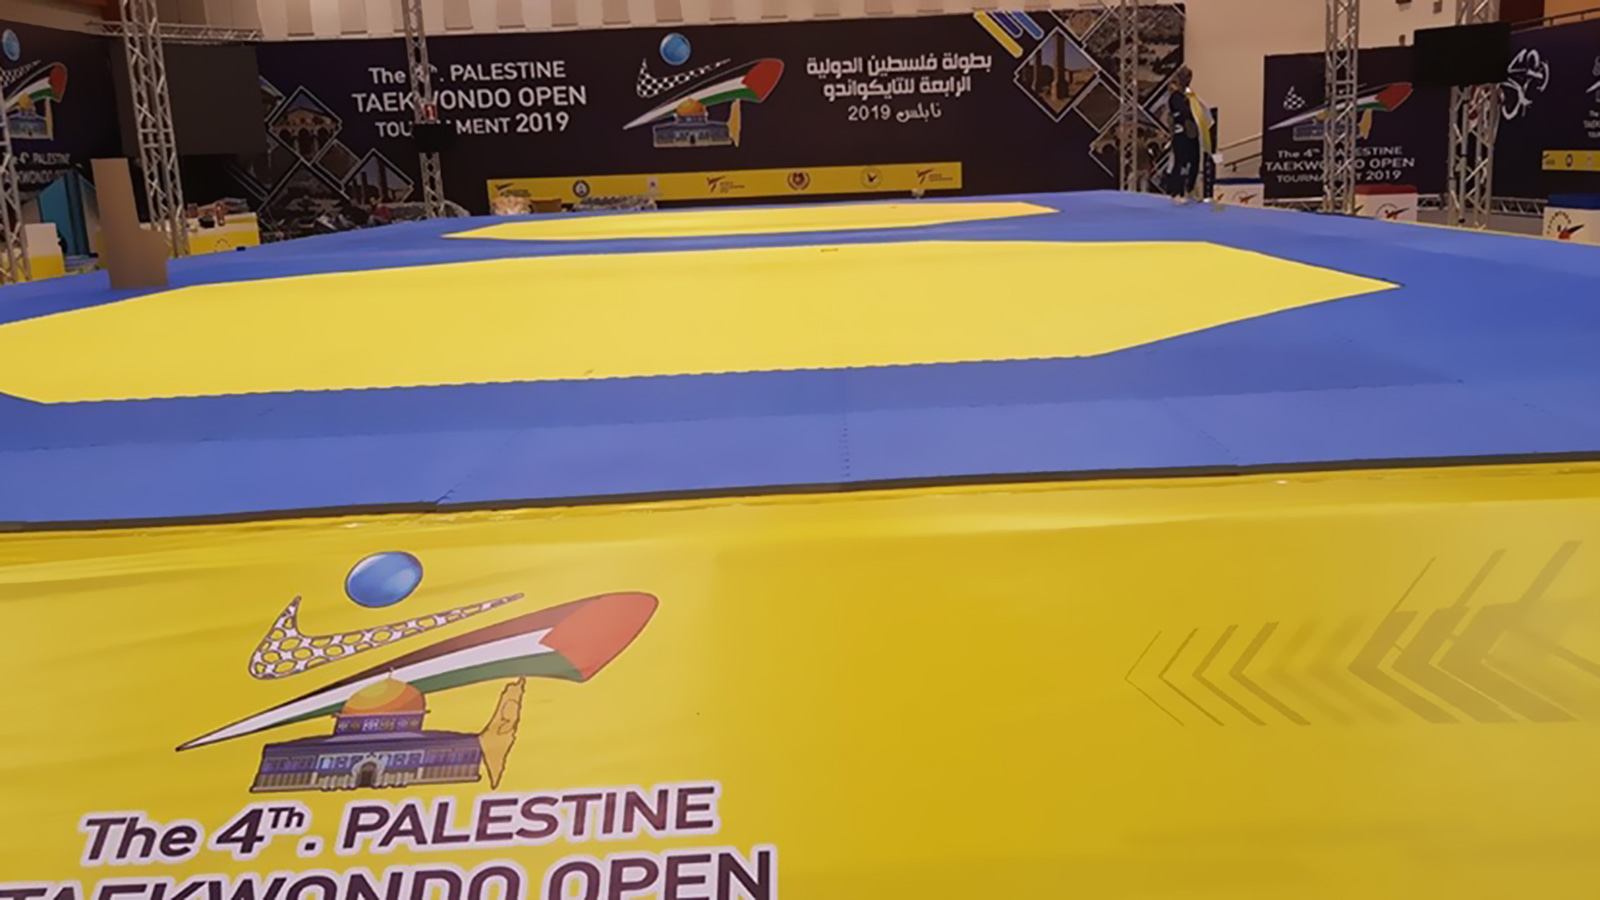 ‪جامعة النجاح بنابلس تستضيف بطولة فلسطين الدولية الرابعة للتايكوندو (‬ مواقع التواصل